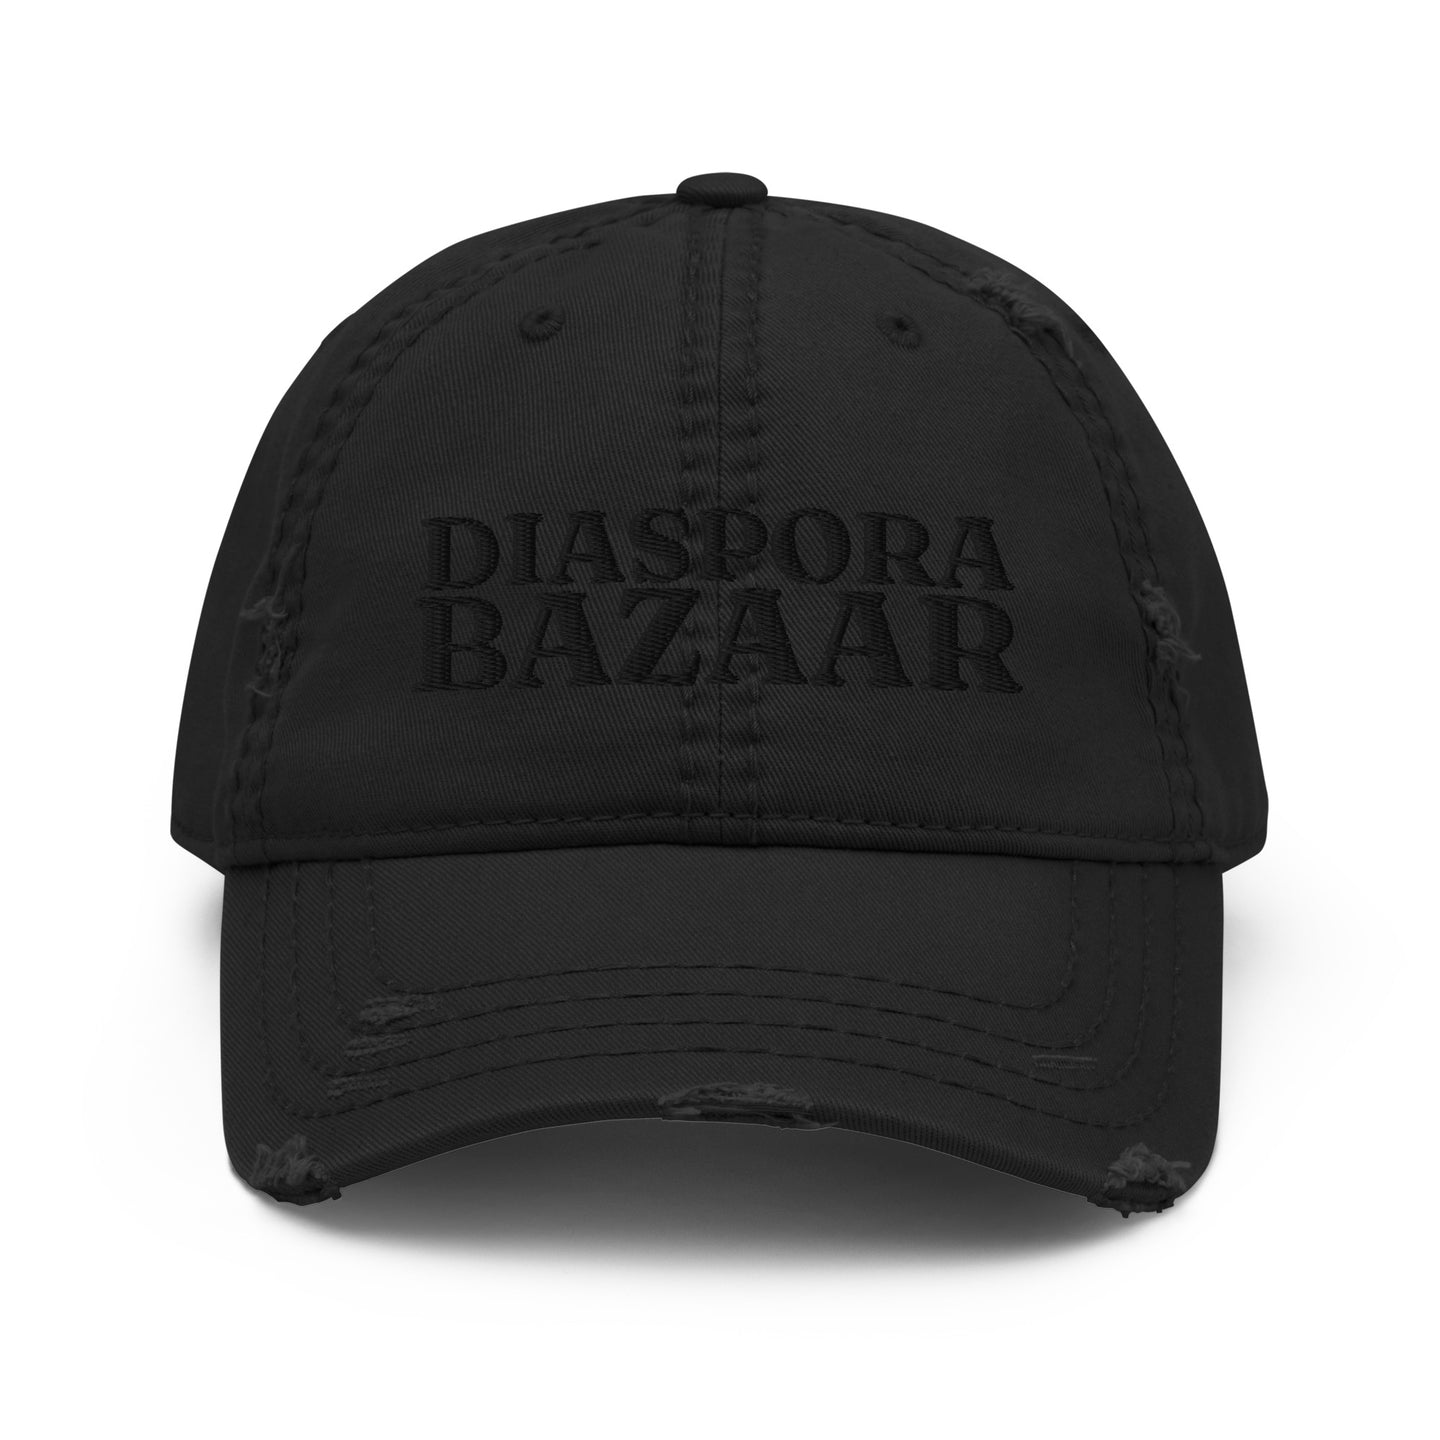 Diaspora Bazaar Distressed Cap